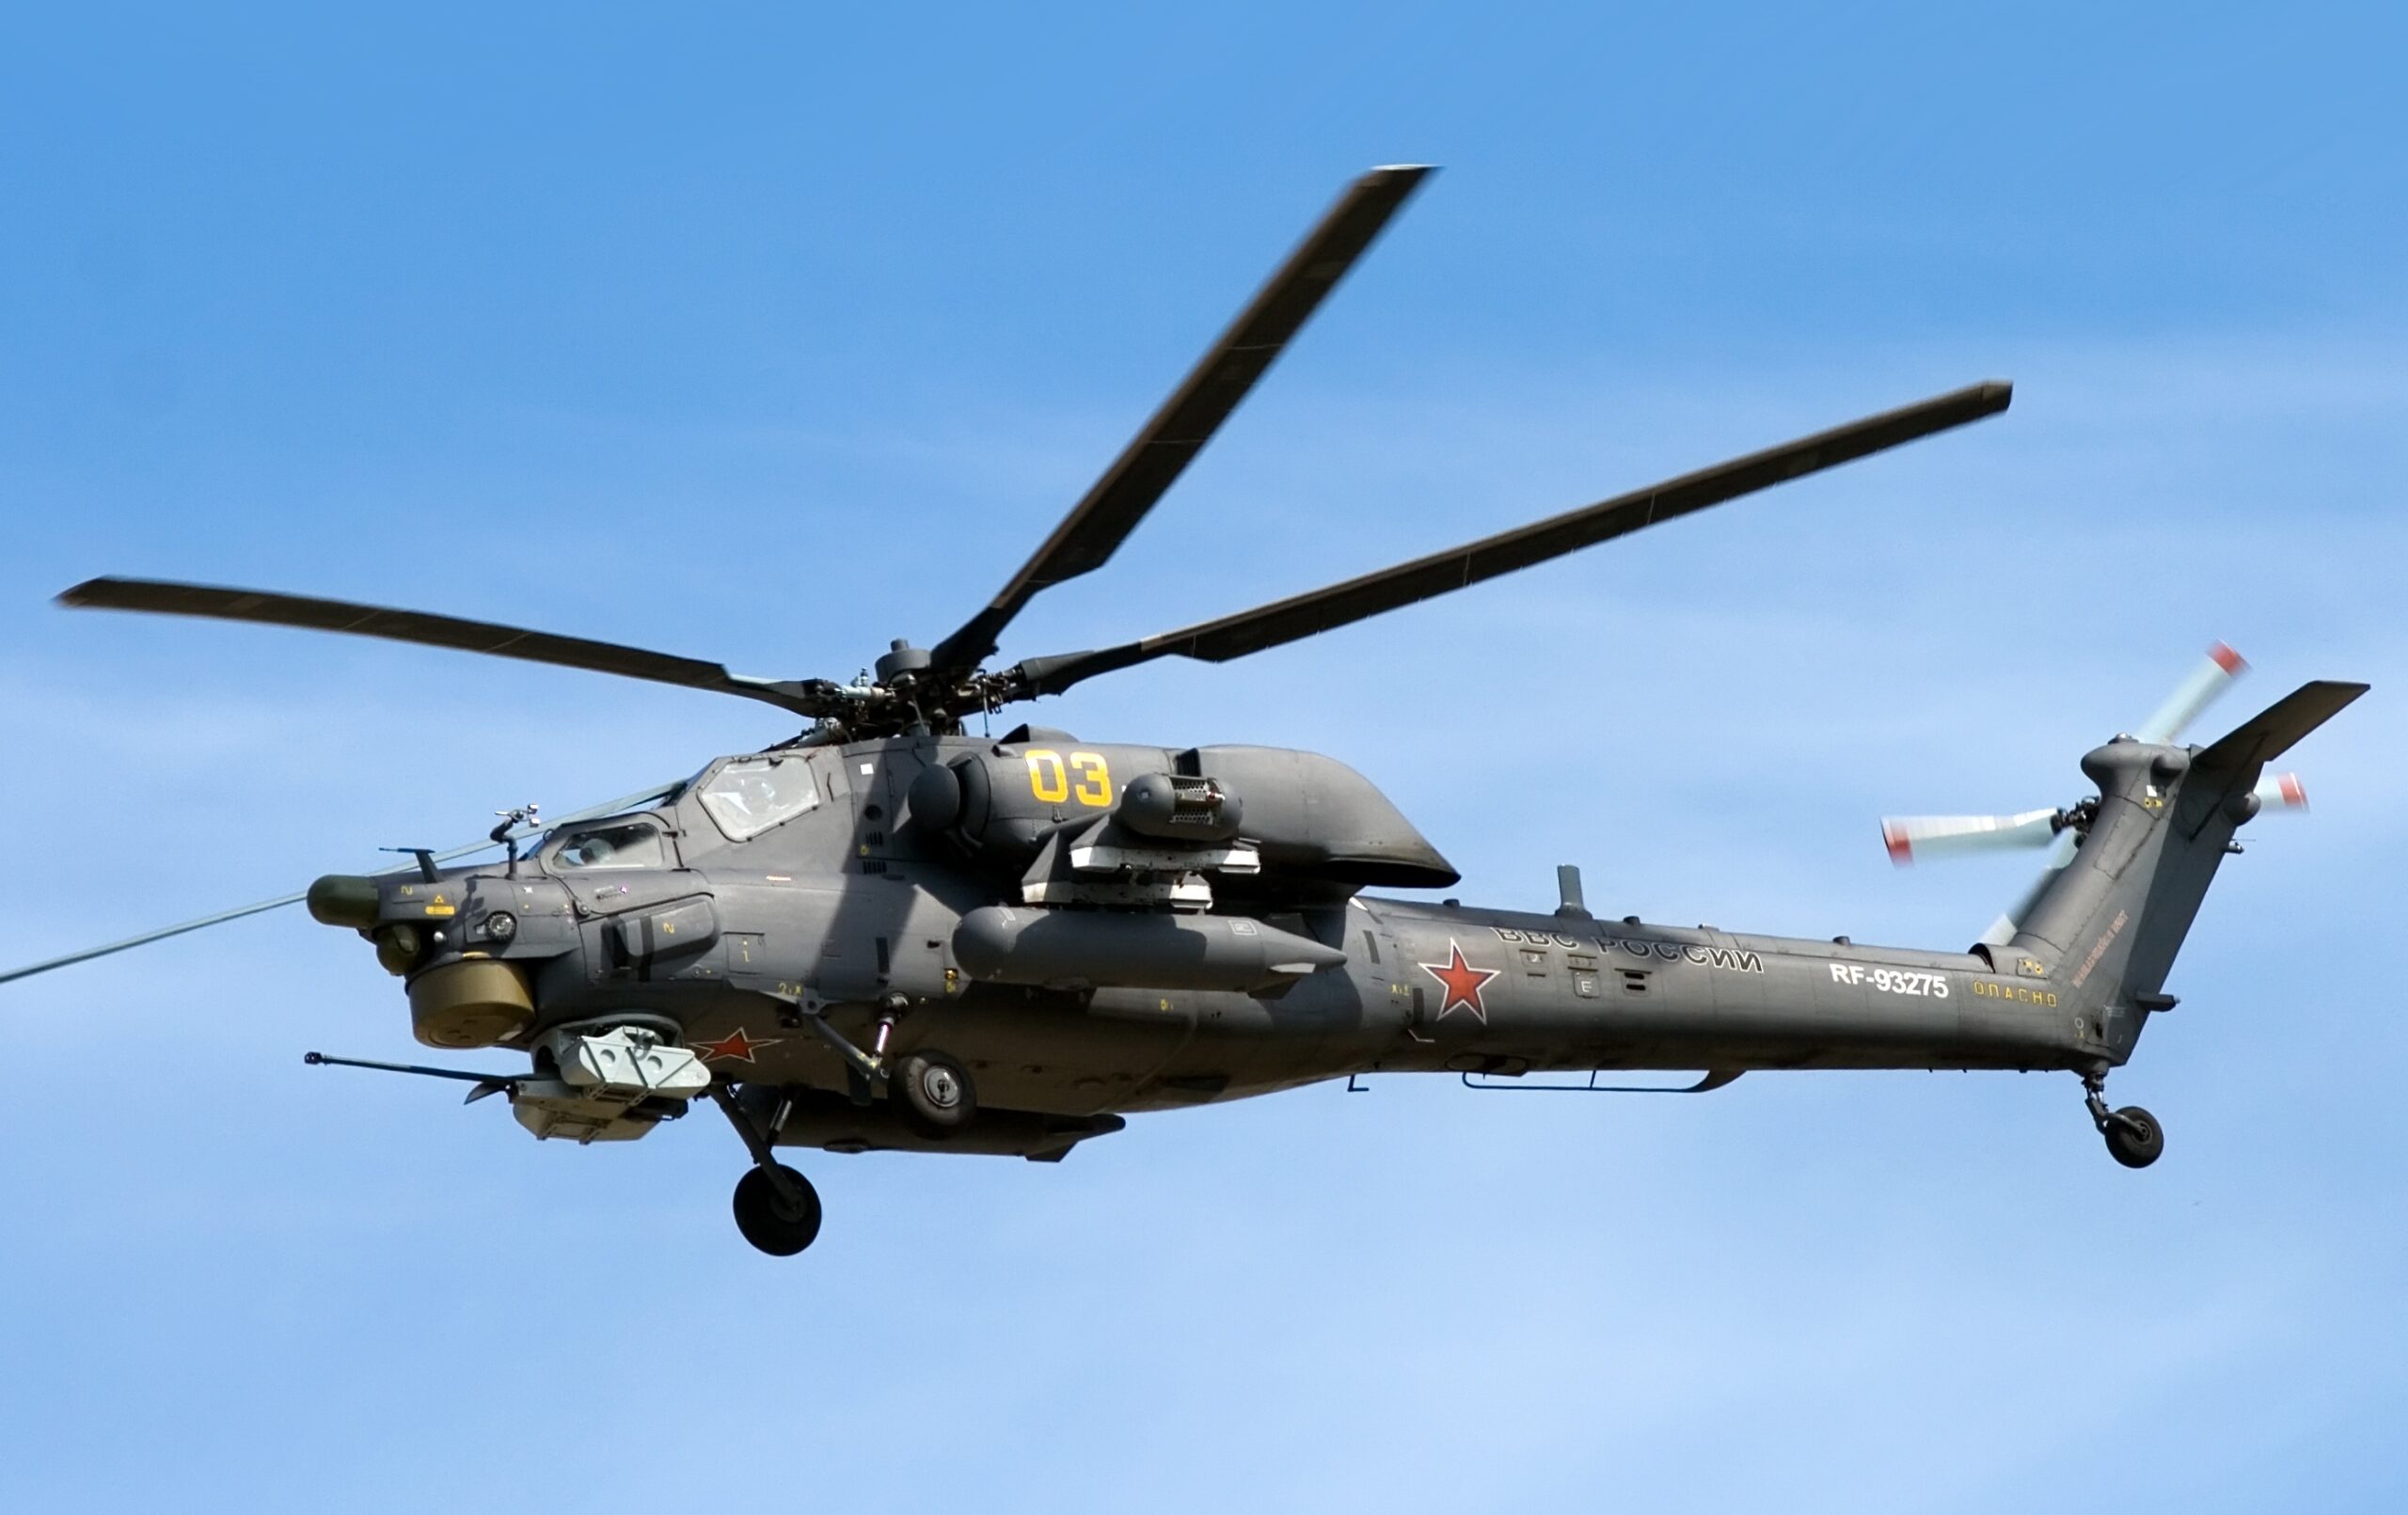 Ρωσικό στρατιωτικό ελικόπτερο Mi-28 συνετρίβη Κριμαία – Από μηχανική βλάβη, λέει η Μόσχα